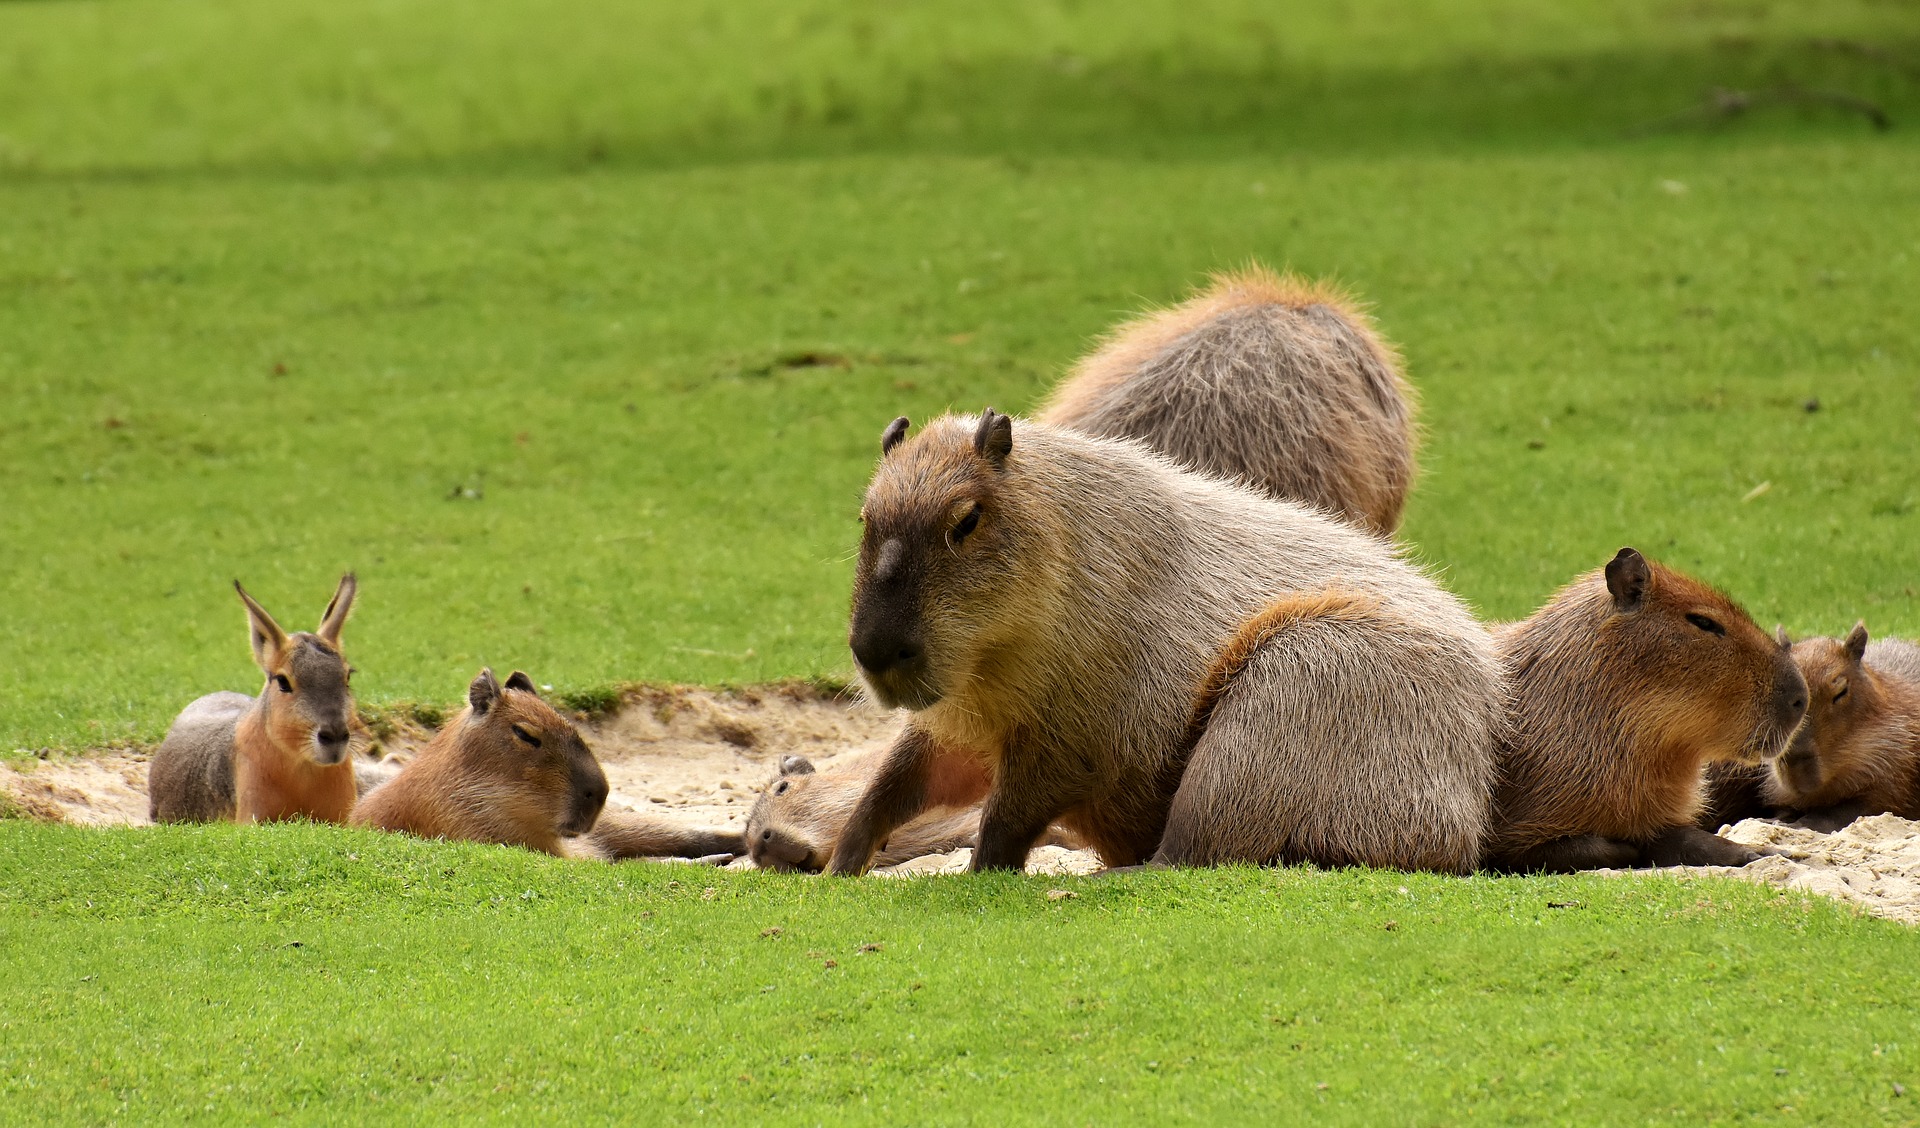 Kapibara - kaip atrodo didžiausias graužikas pasaulyje ir kokie jo įpročiai?